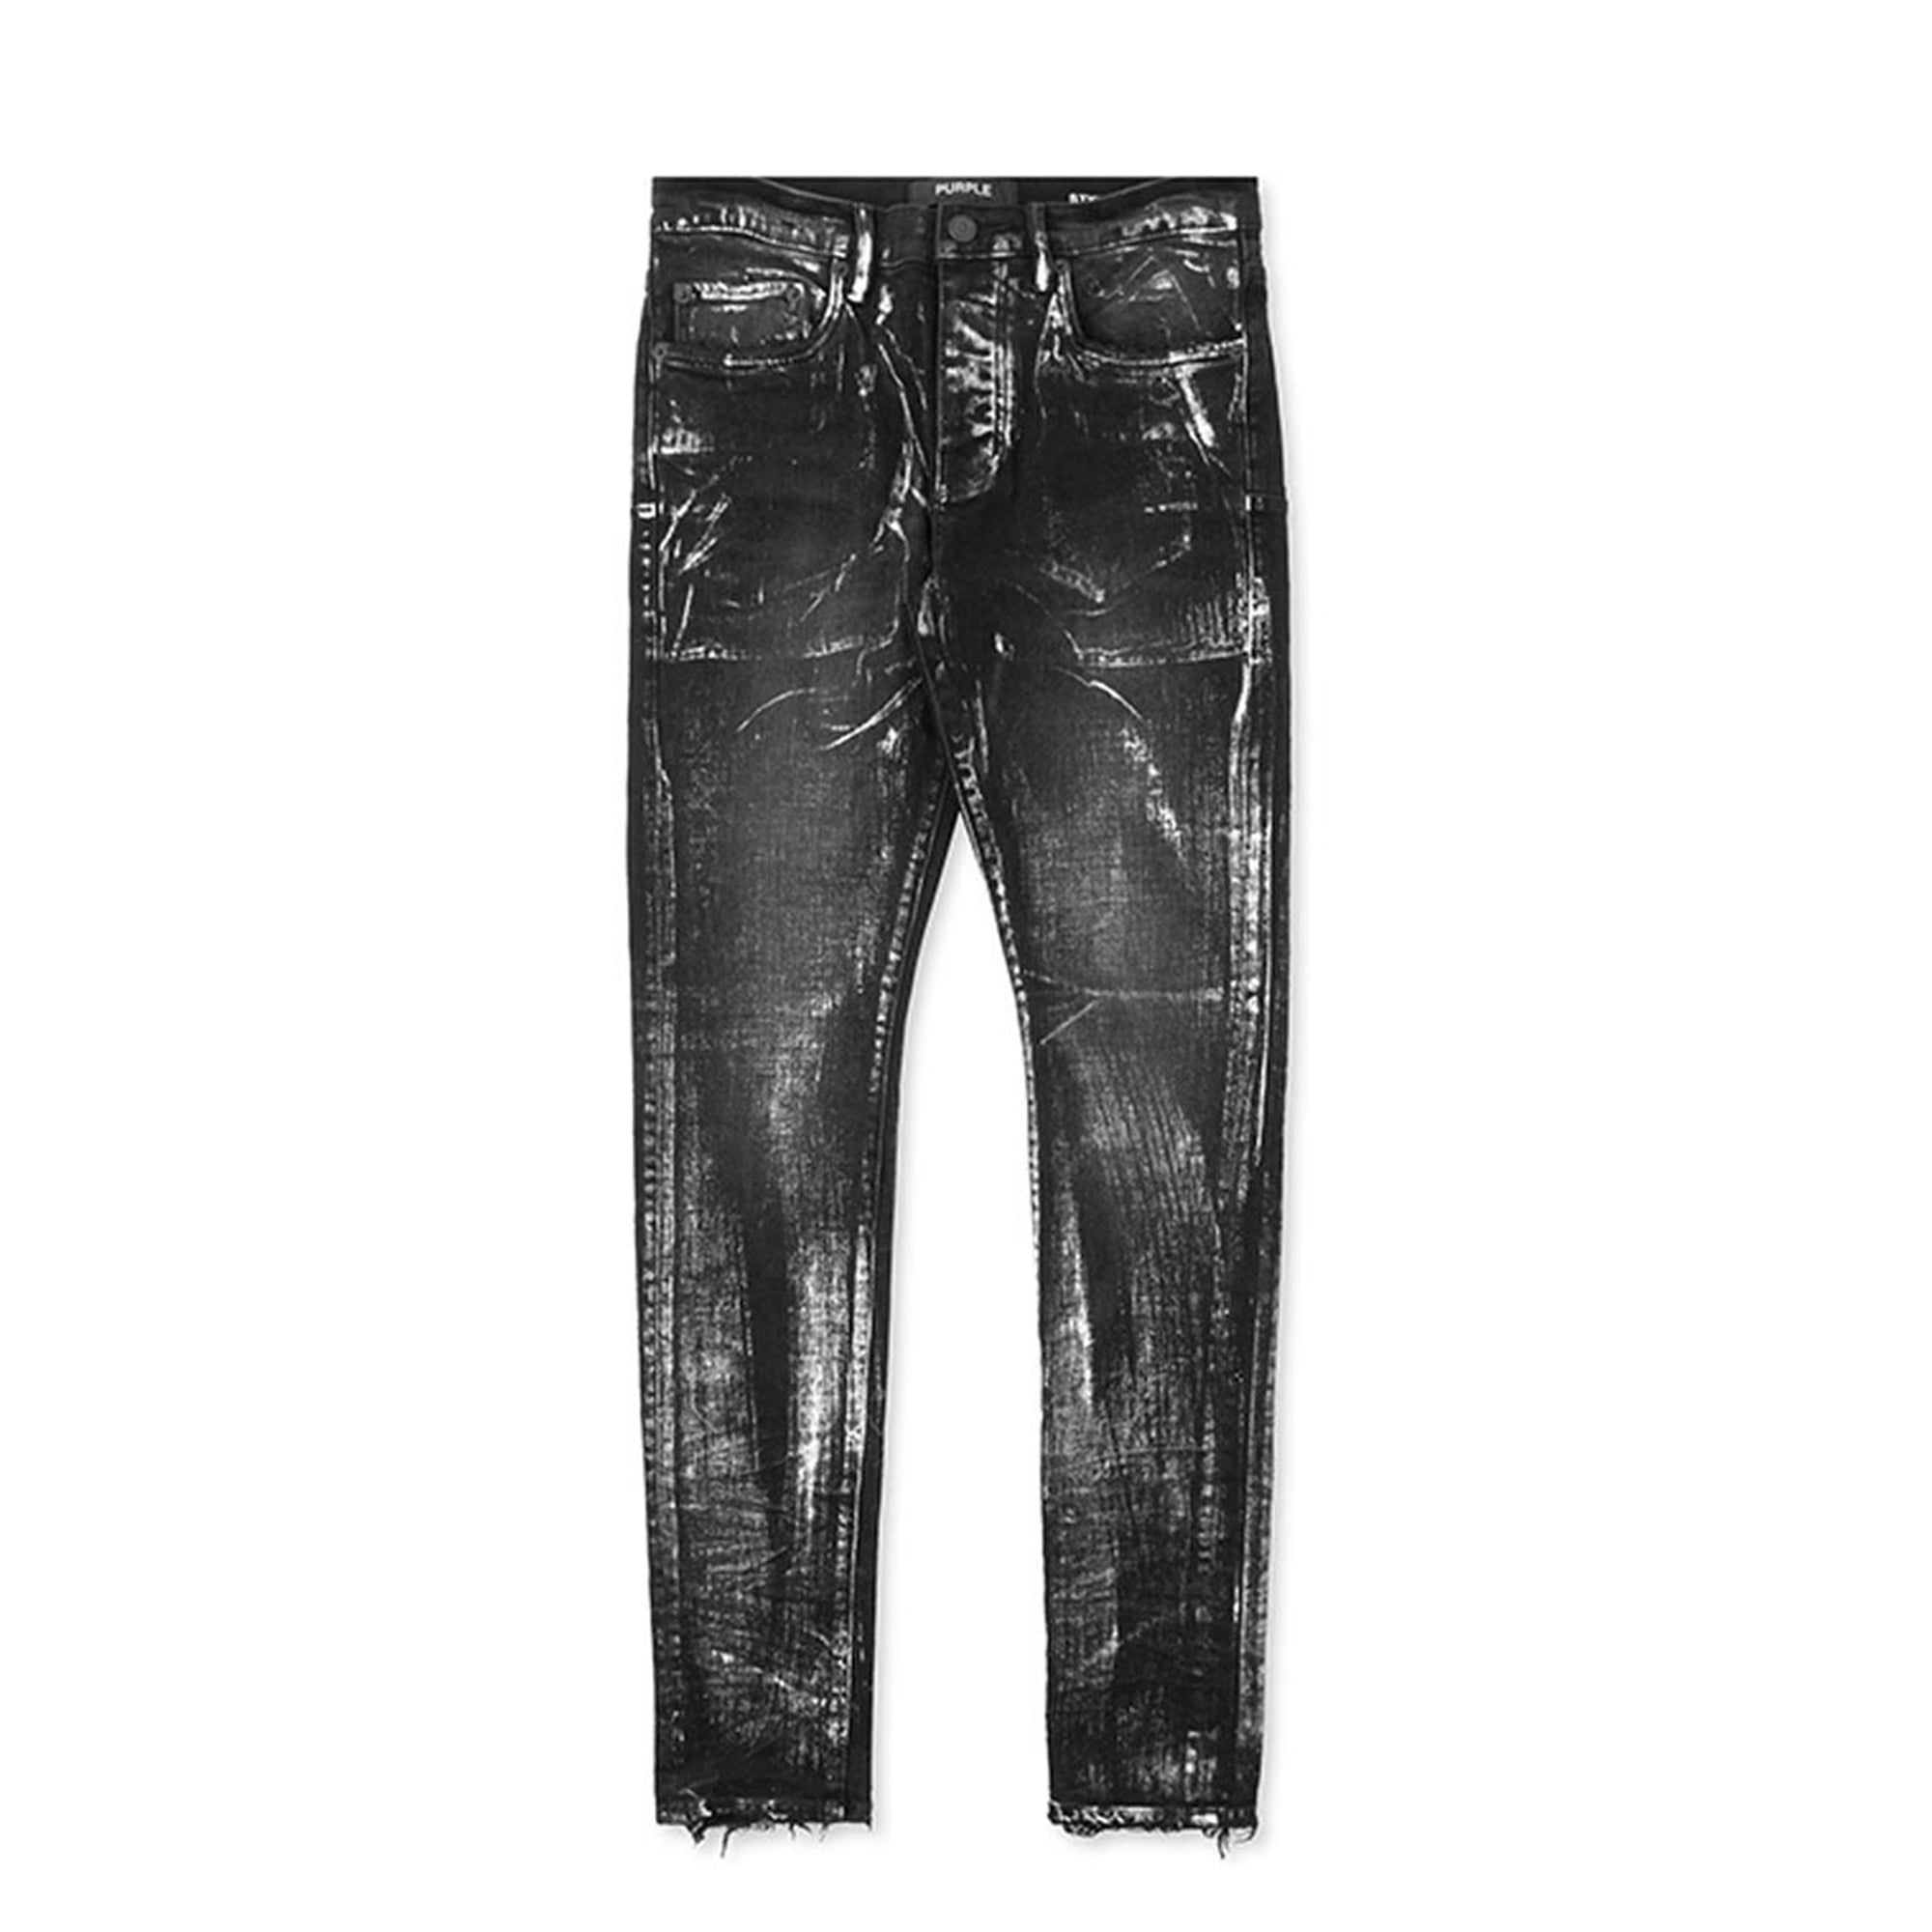 PURPLE BRAND Jeans slim fit in abvg ash black vintage